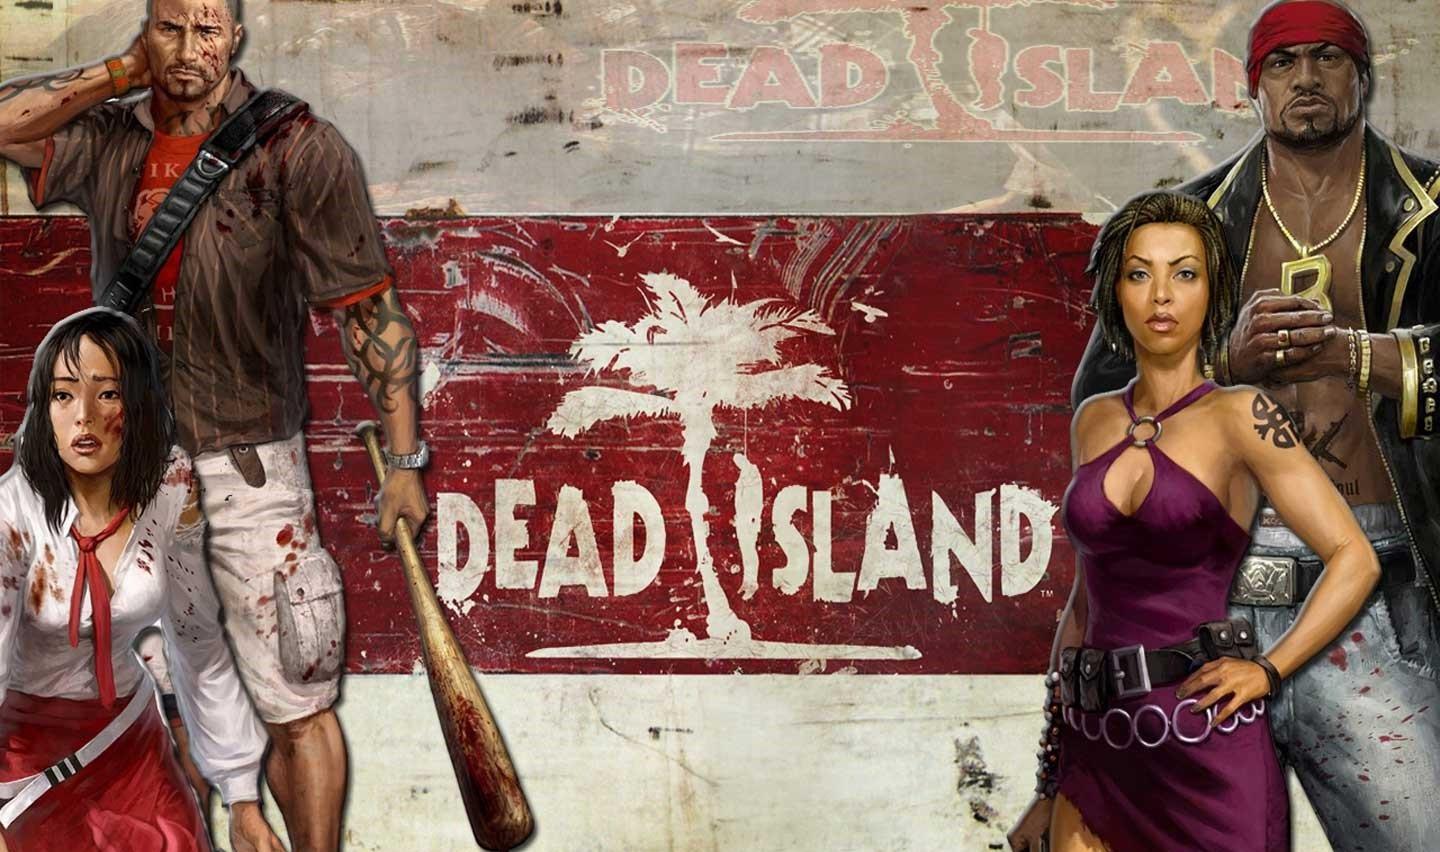 死亡岛 dead island游戏评测20171103001